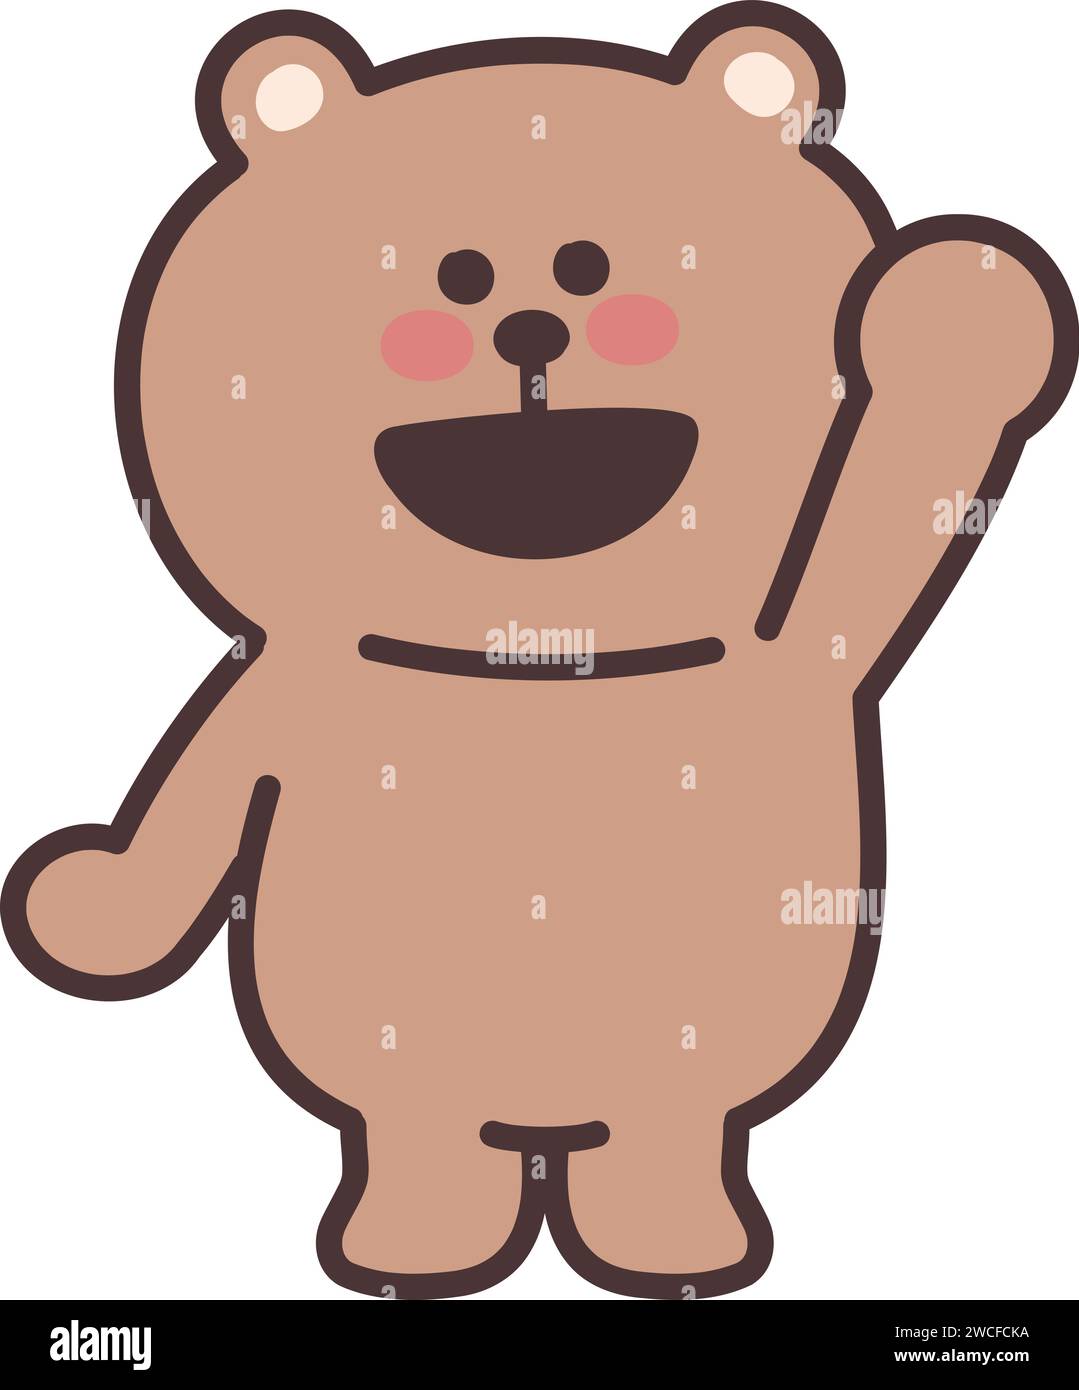 Cartoon Teddybär winkt jemandem mit einem Lächeln zu. Vektorabbildung isoliert auf einem transparenten Hintergrund. Stock Vektor